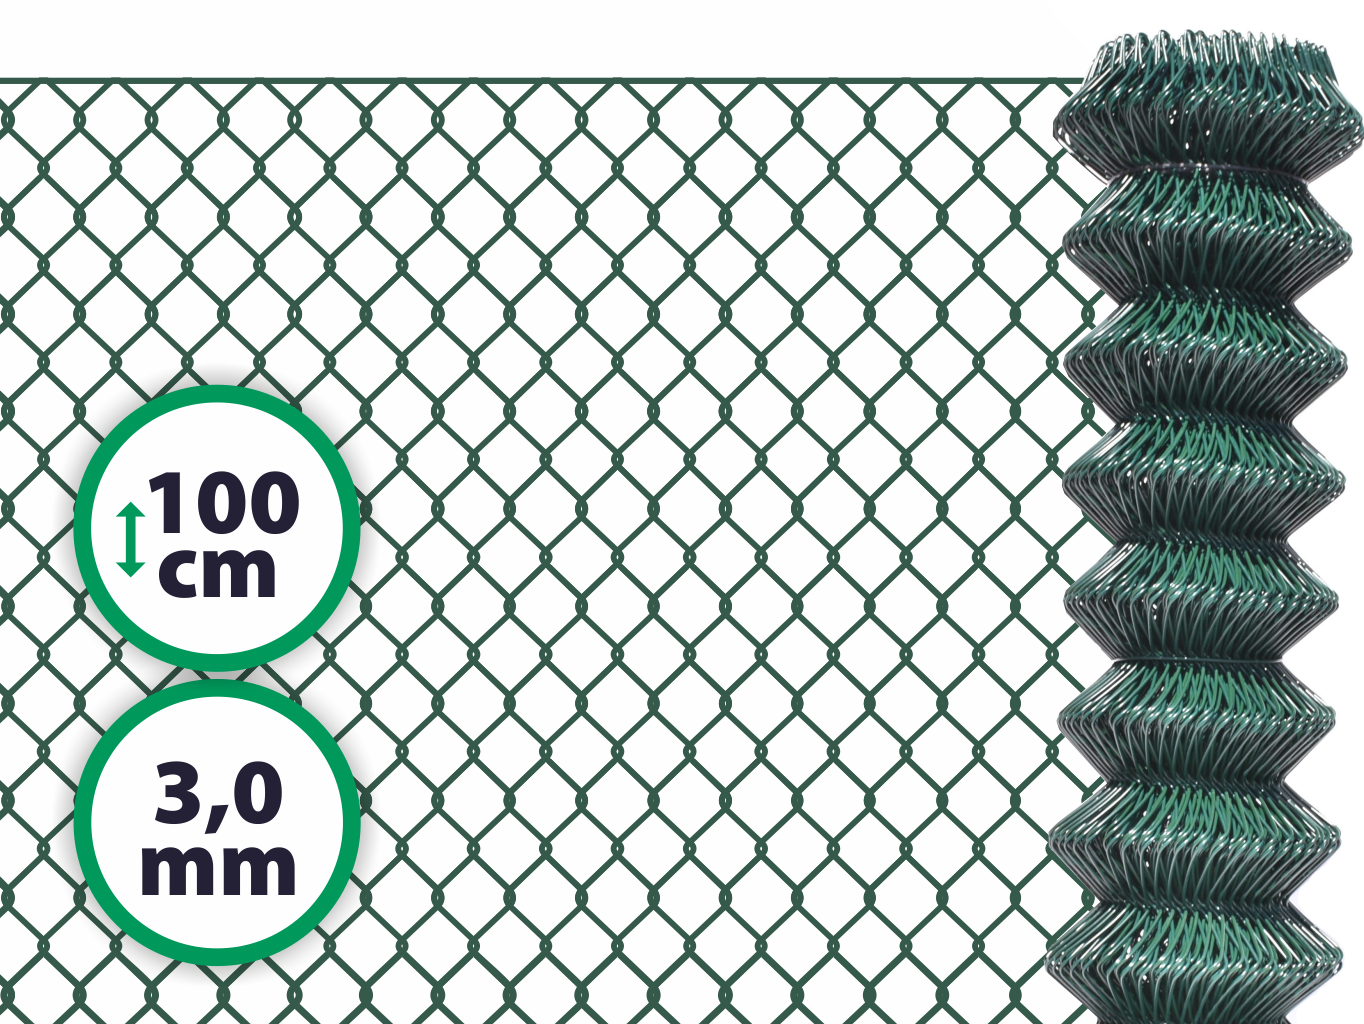 Pletivo poplastované SUPER – 100 cm bez ND (3,0 mm; 50x50 mm; PVC; zelené) PLOTY Sklad5 0 8595068412718